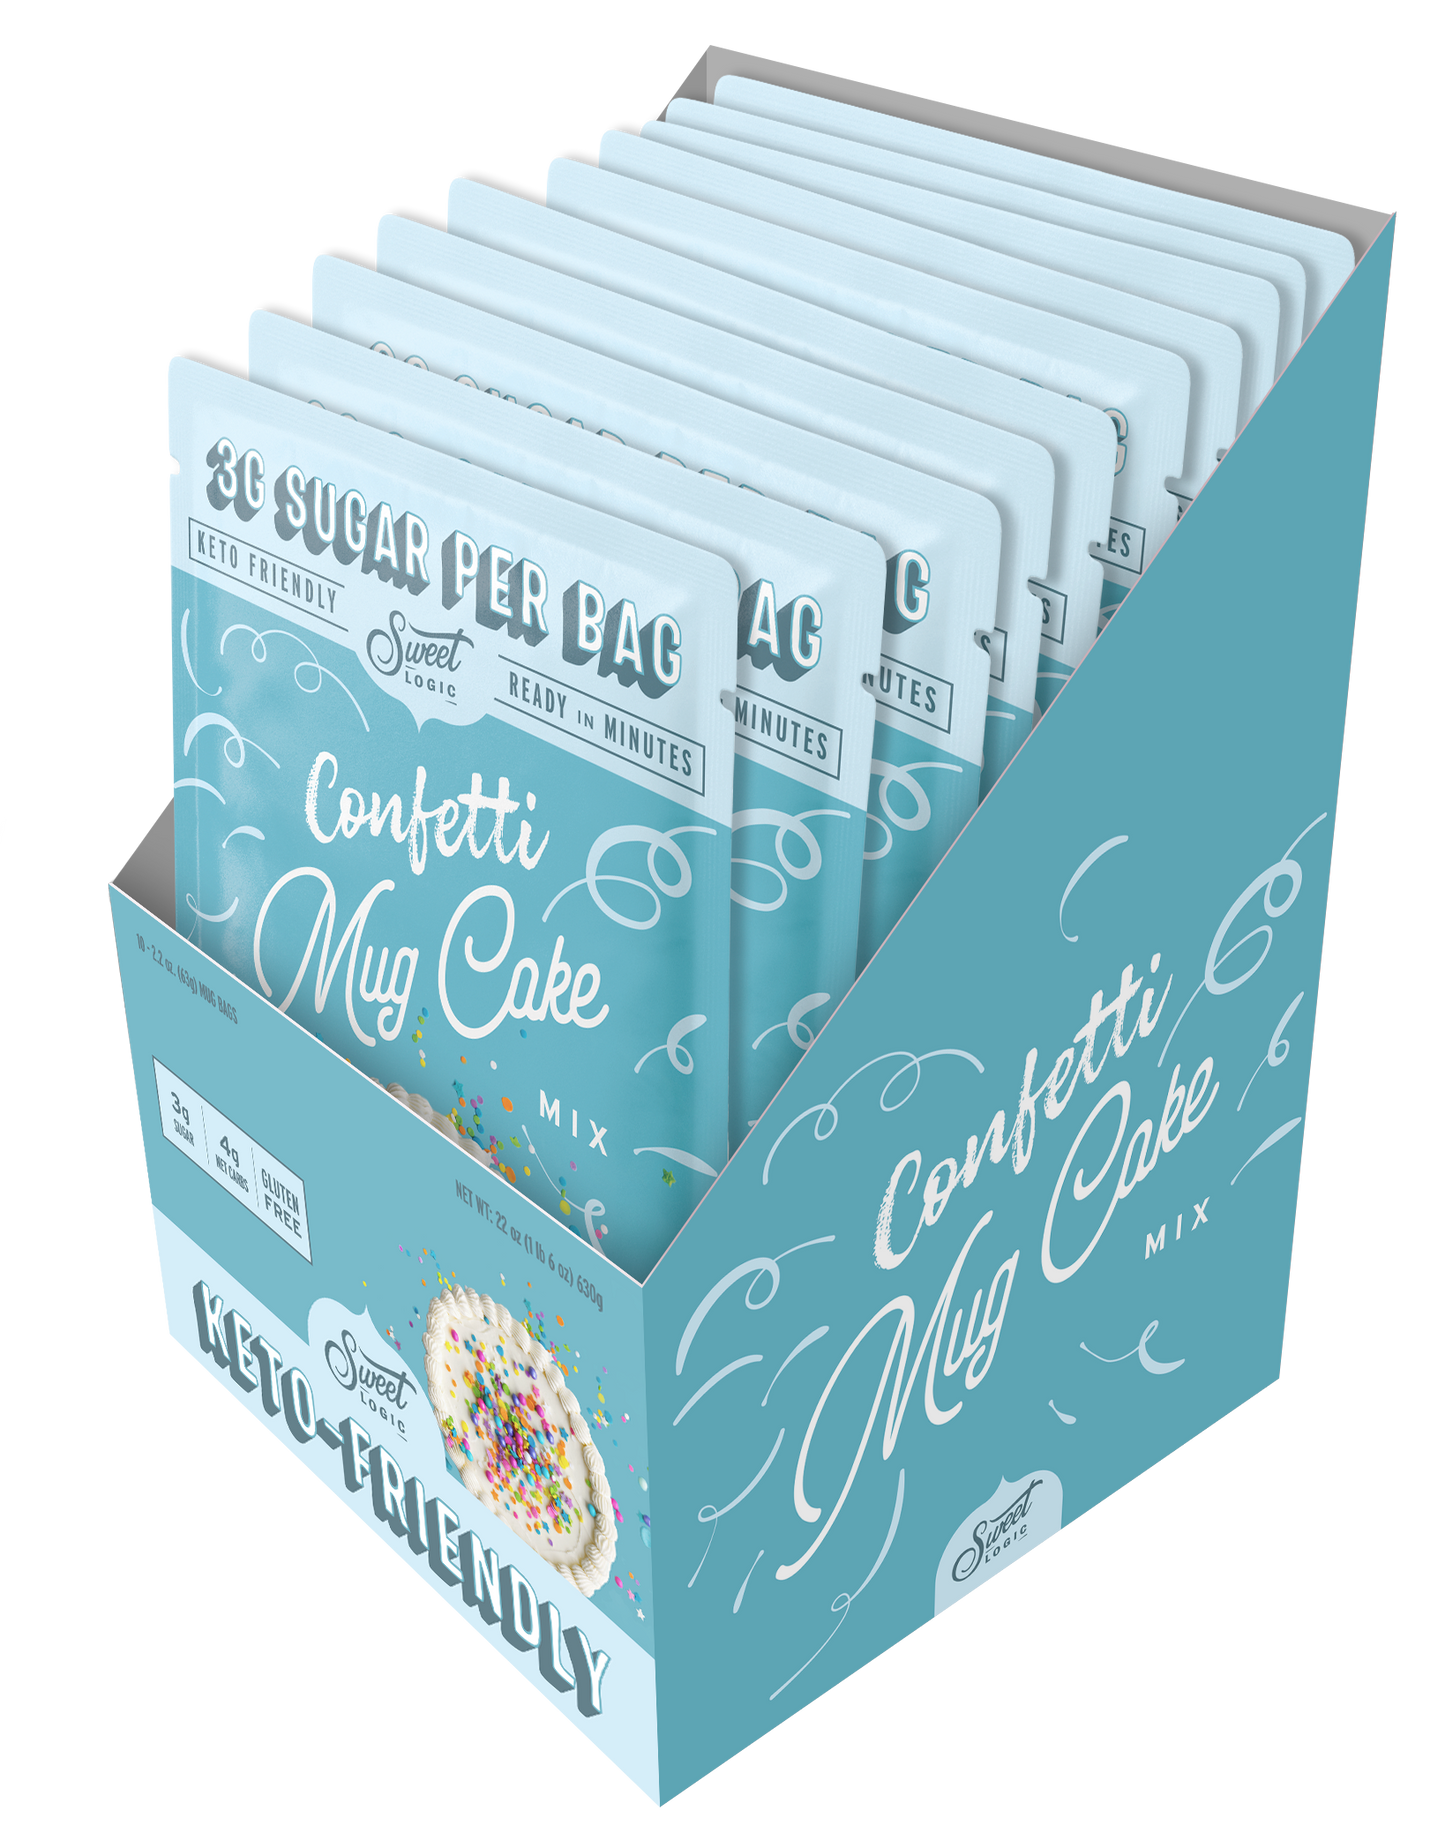 Confetti Keto Mug Cake (10-Pack) - Retail Box